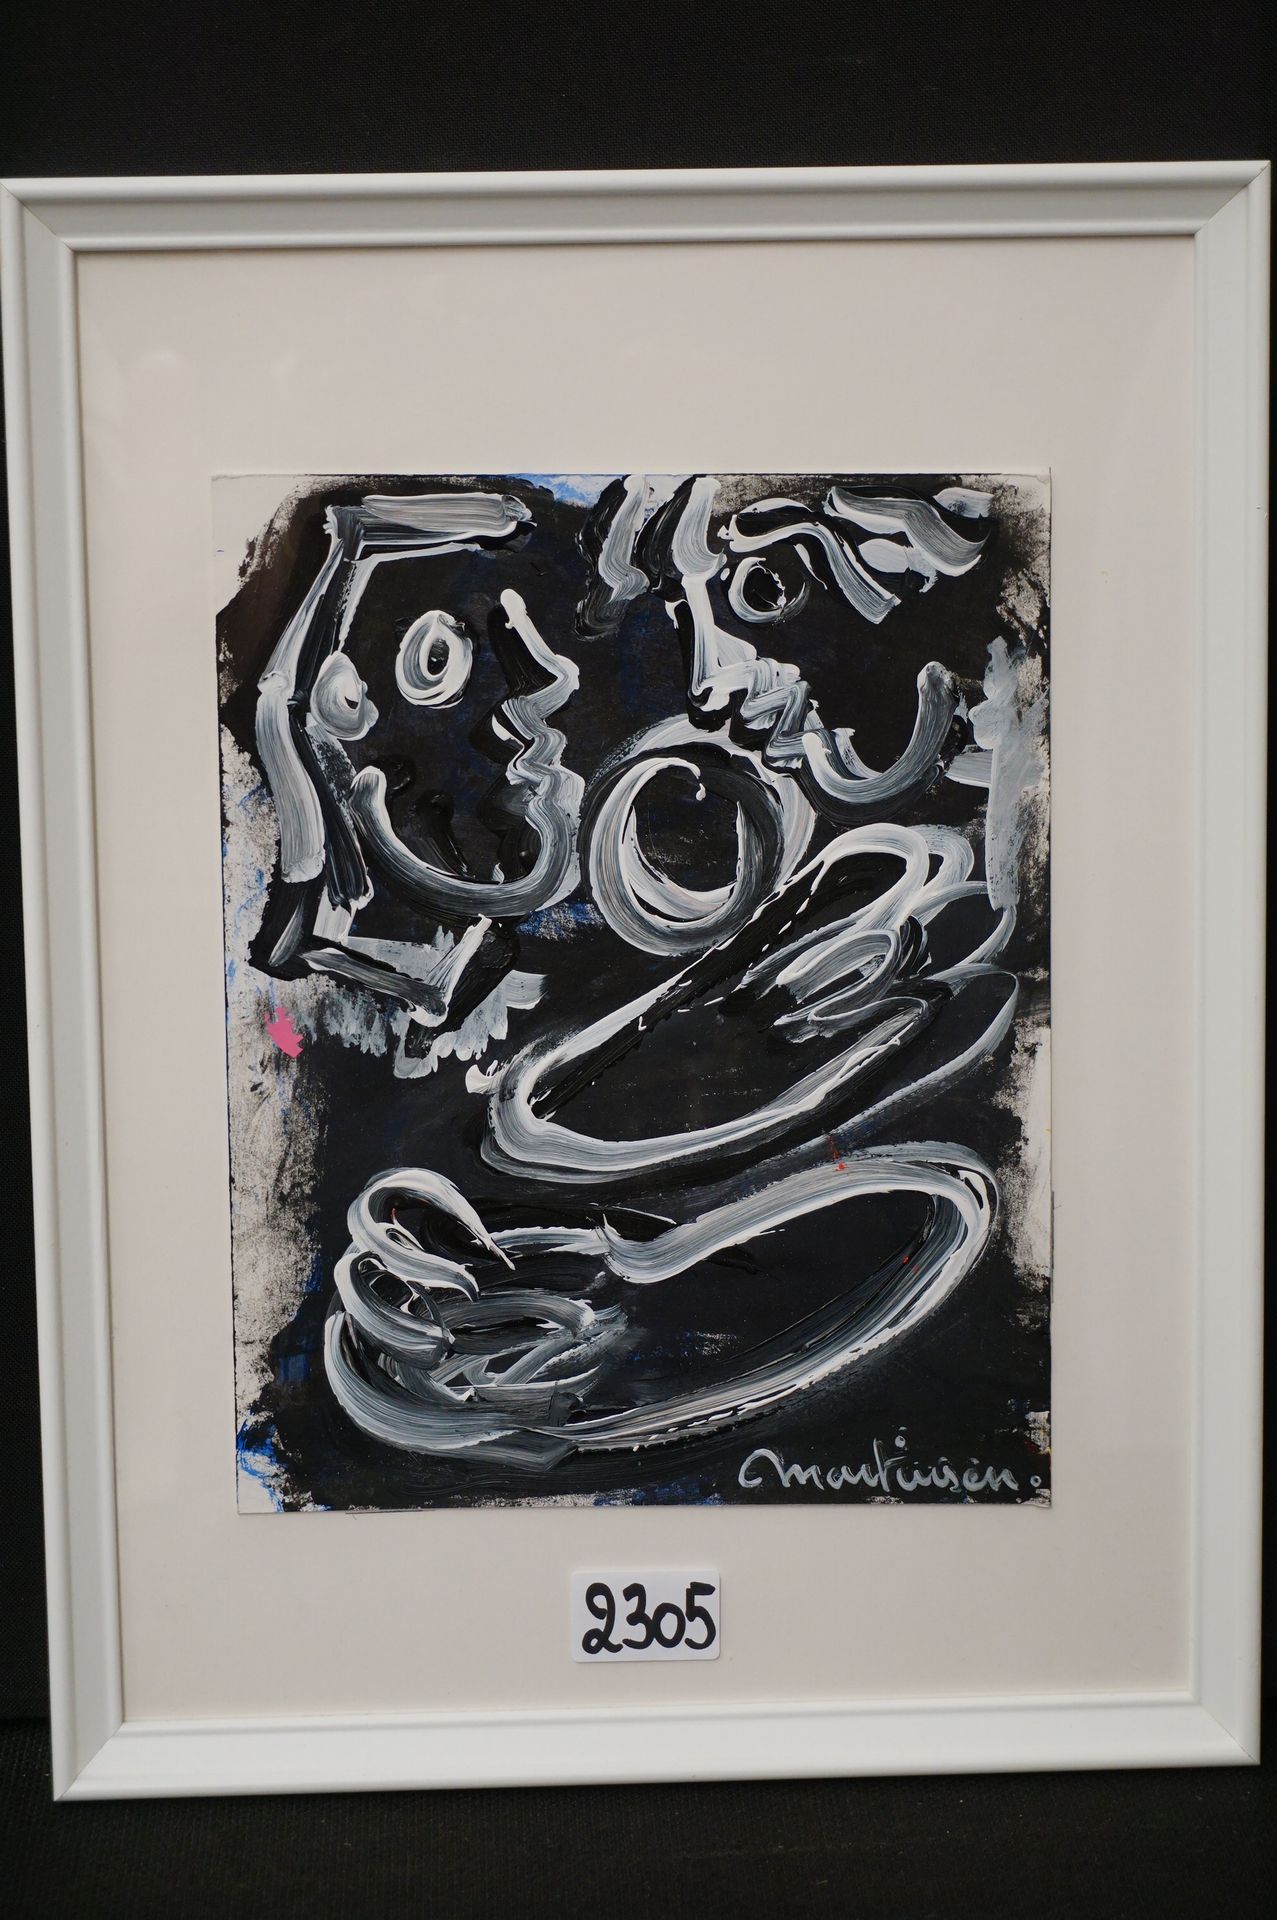 LUC MARTINSEN (1951 - ) "Composición moderna" - Acrílico - Firmado - 27 x 22 cm